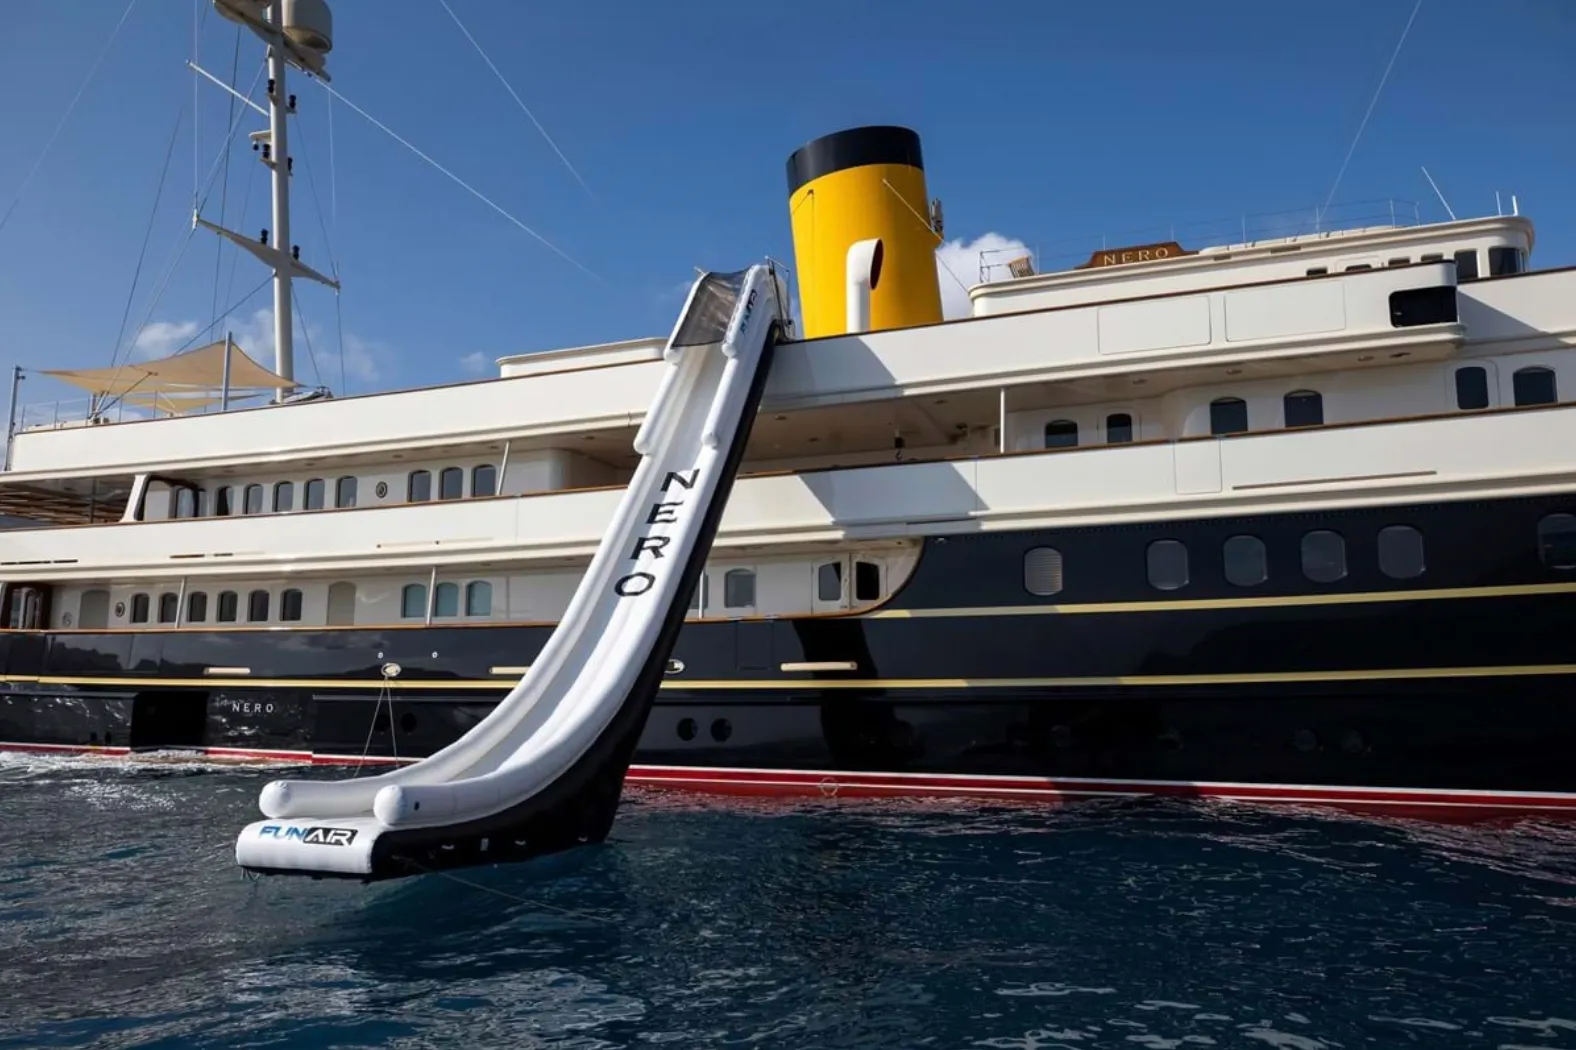 The custom Yacht Slide on superyacht Nero